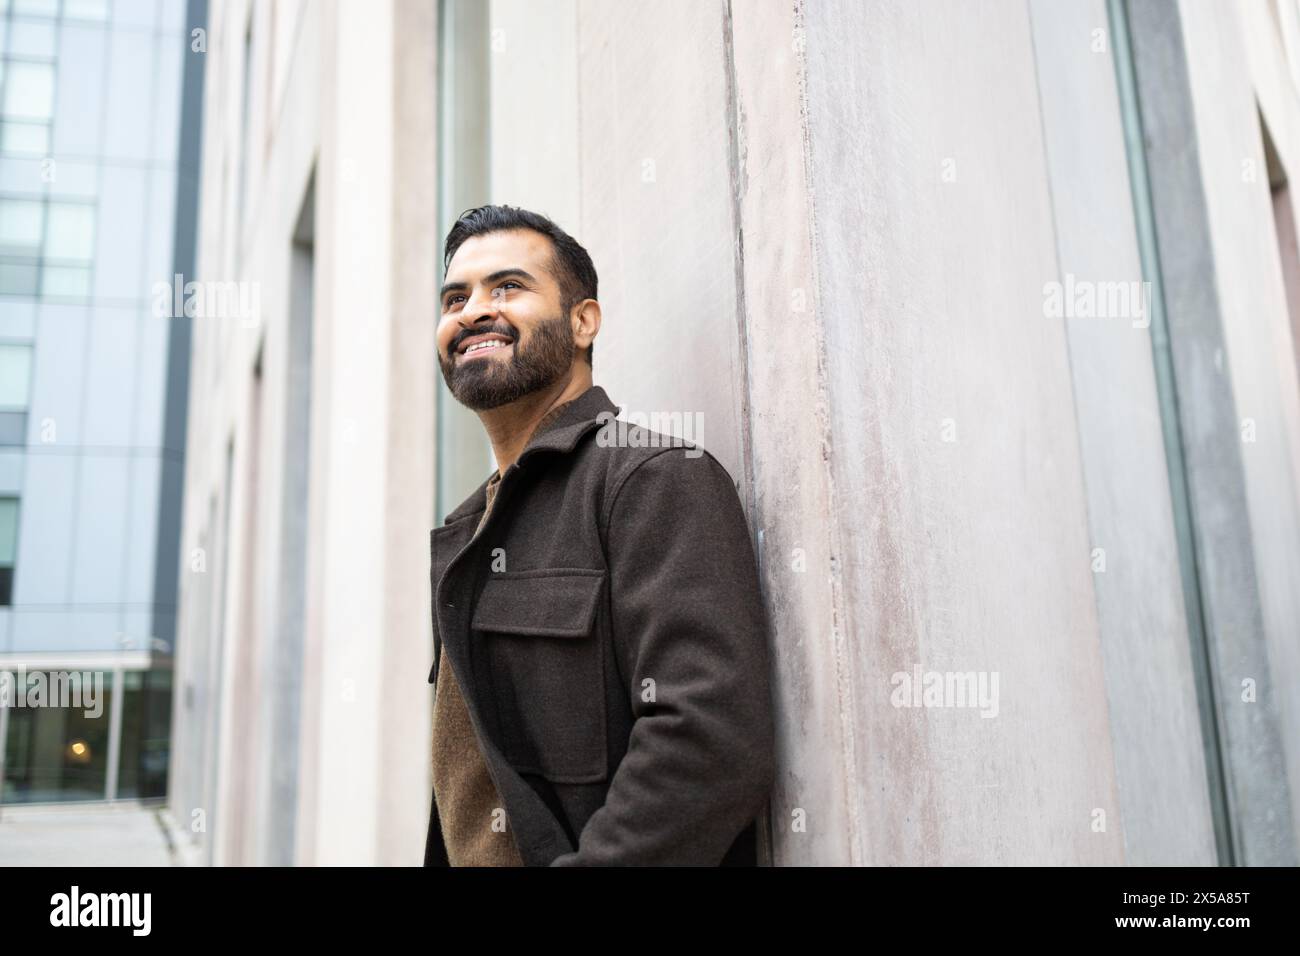 Un homme content avec une barbe dans un manteau brun appuyé contre un mur de bâtiment urbain, regardant vers le haut et souriant Banque D'Images